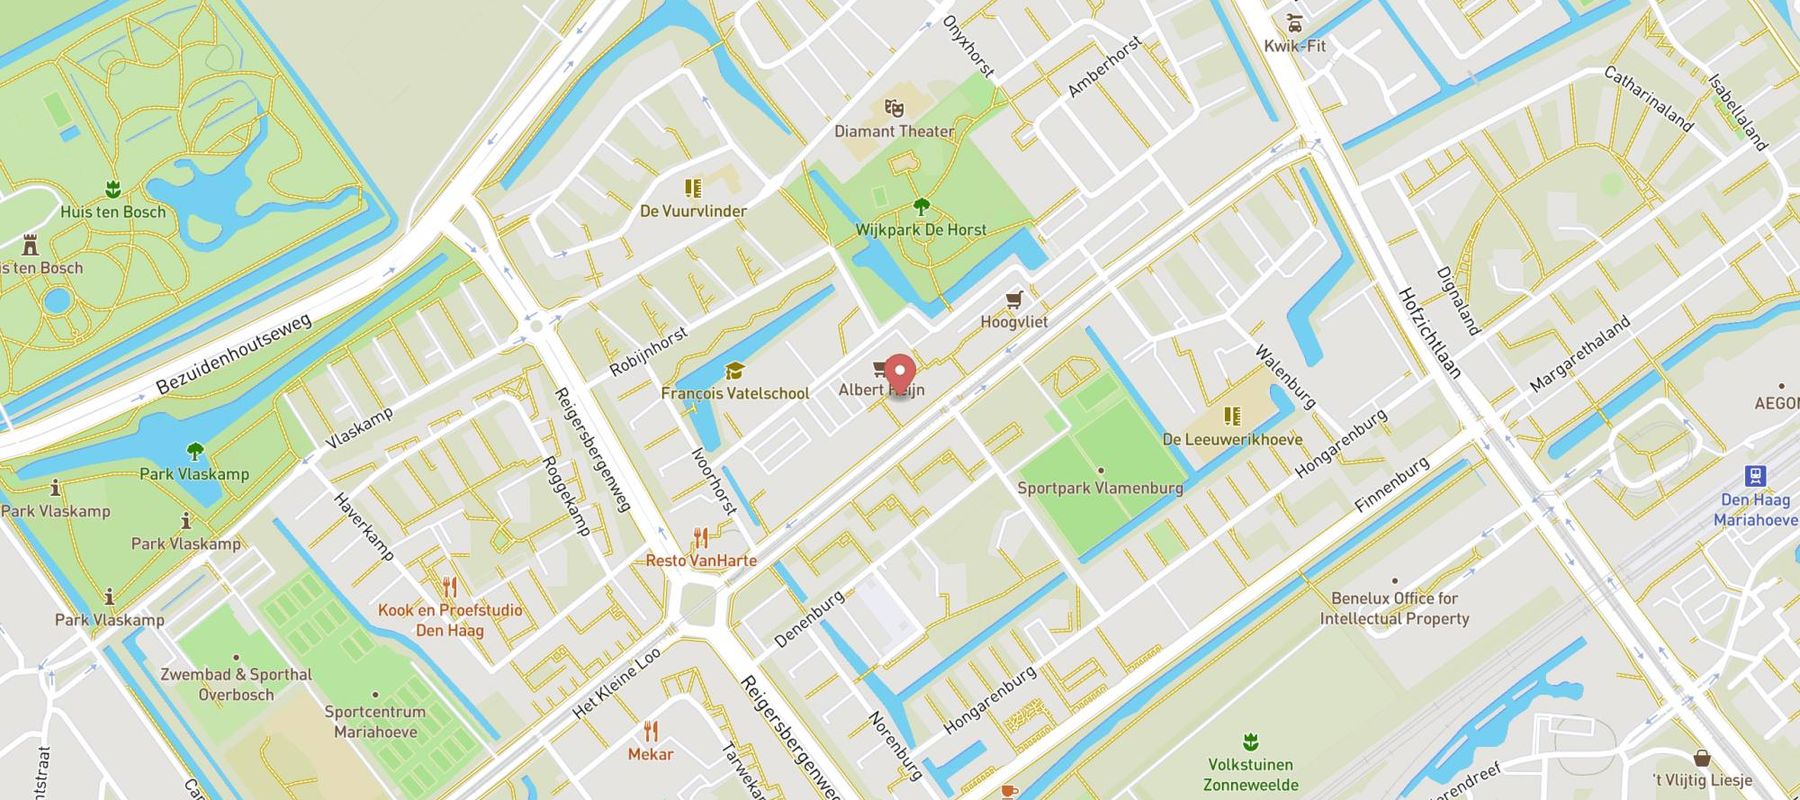 Blokker Den Haag Het Kleine loo map